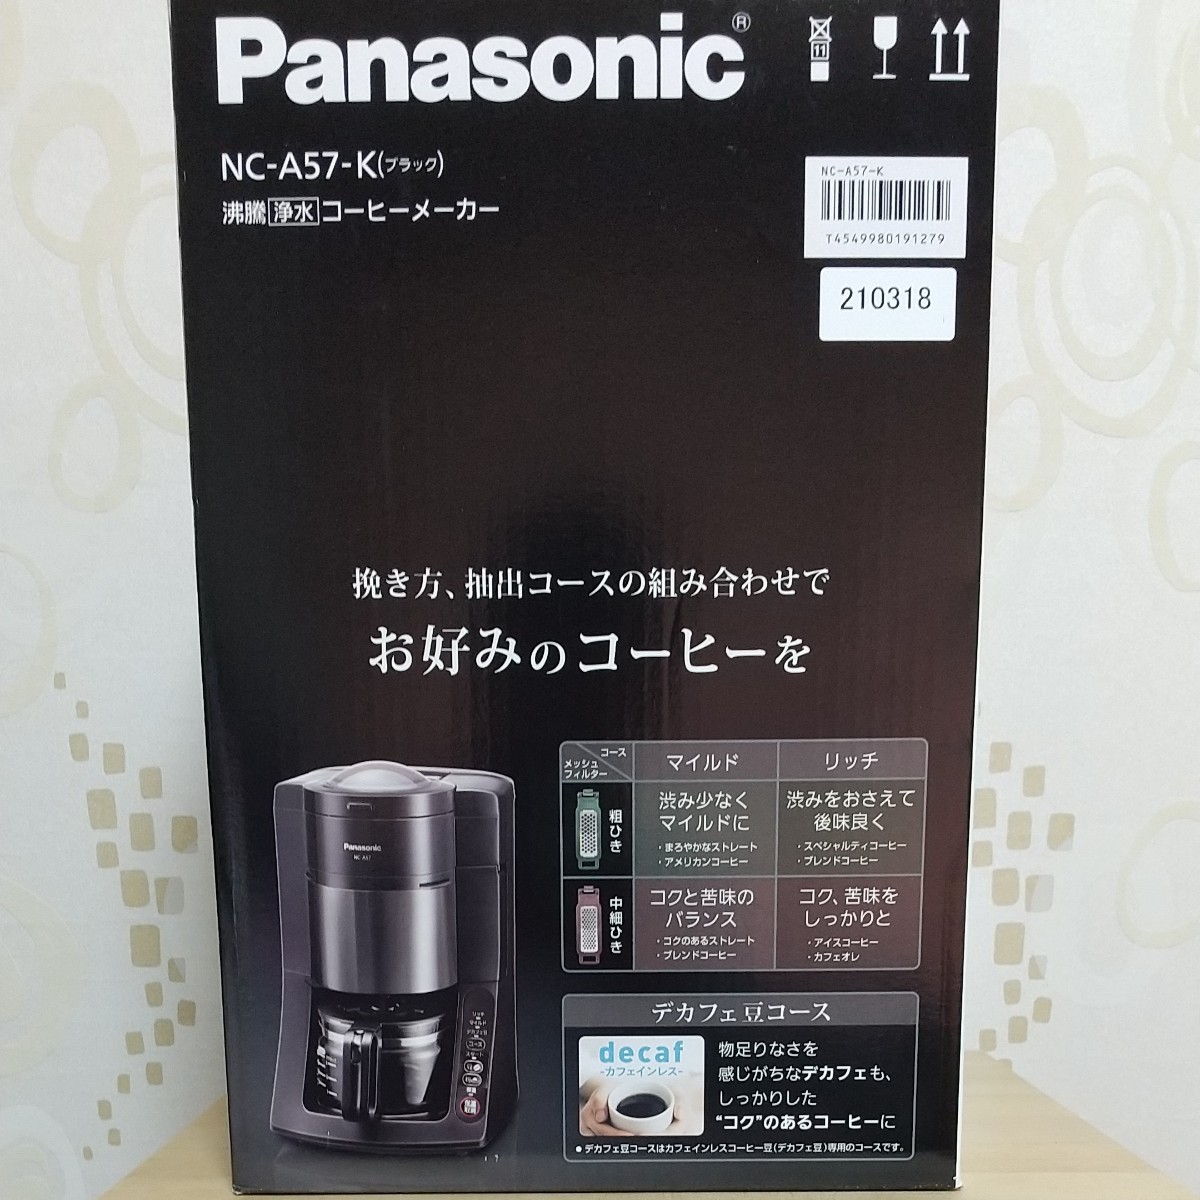 パナソニック 全自動コーヒーメーカー NC-A57-K